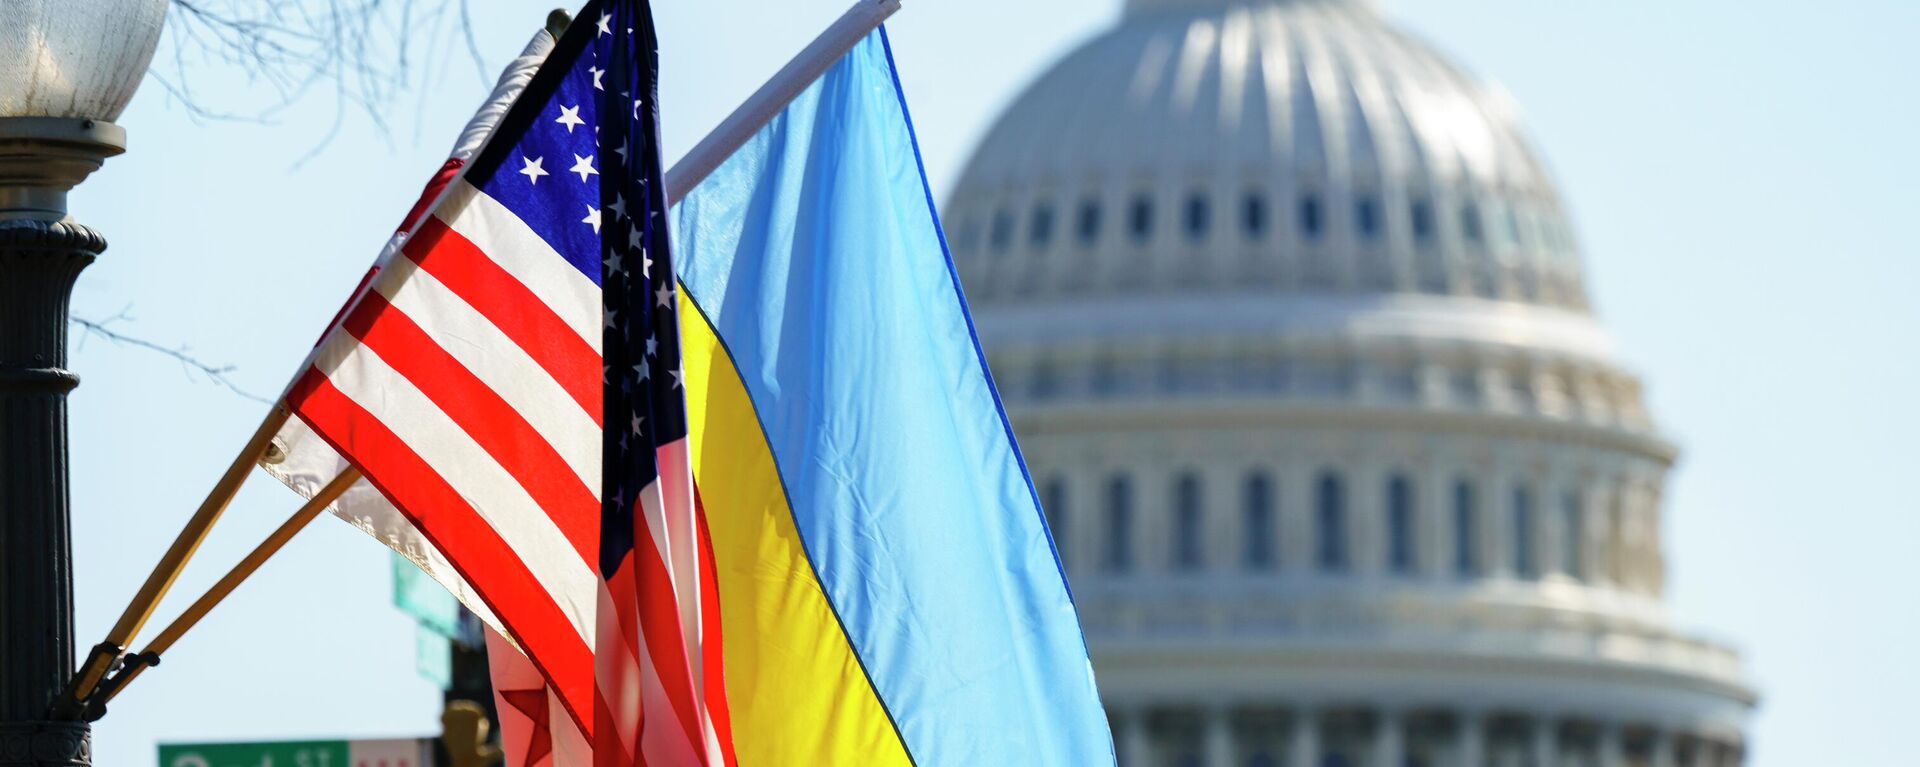 Cờ của Ukraina và Hoa Kỳ tại tòa nhà Capitol ở Washington - Sputnik Việt Nam, 1920, 07.11.2022